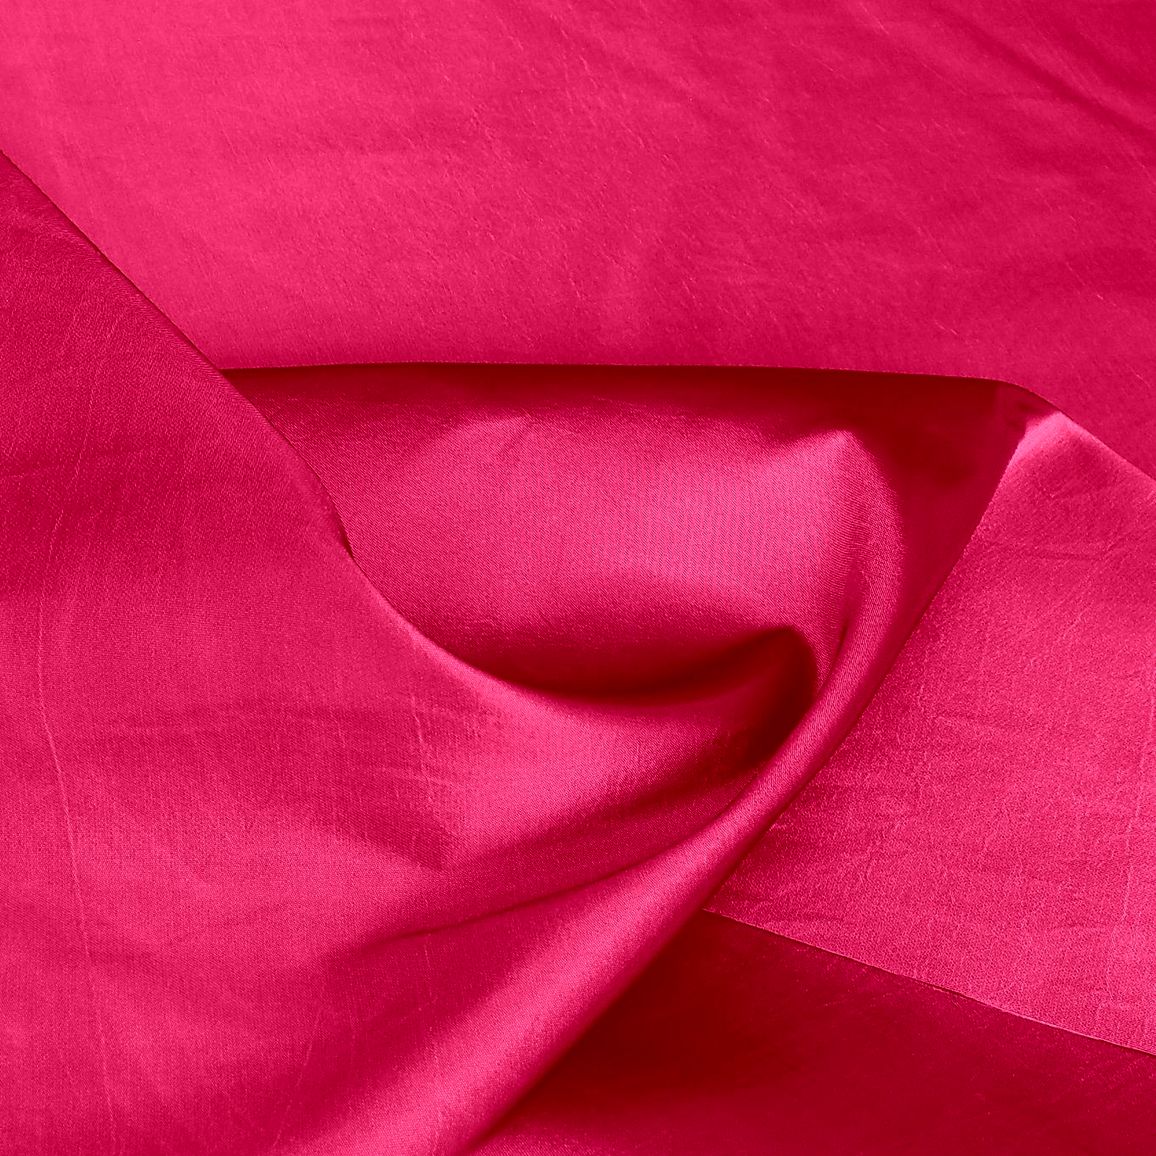 Kleider- und DekoTaft in Pink-Rot